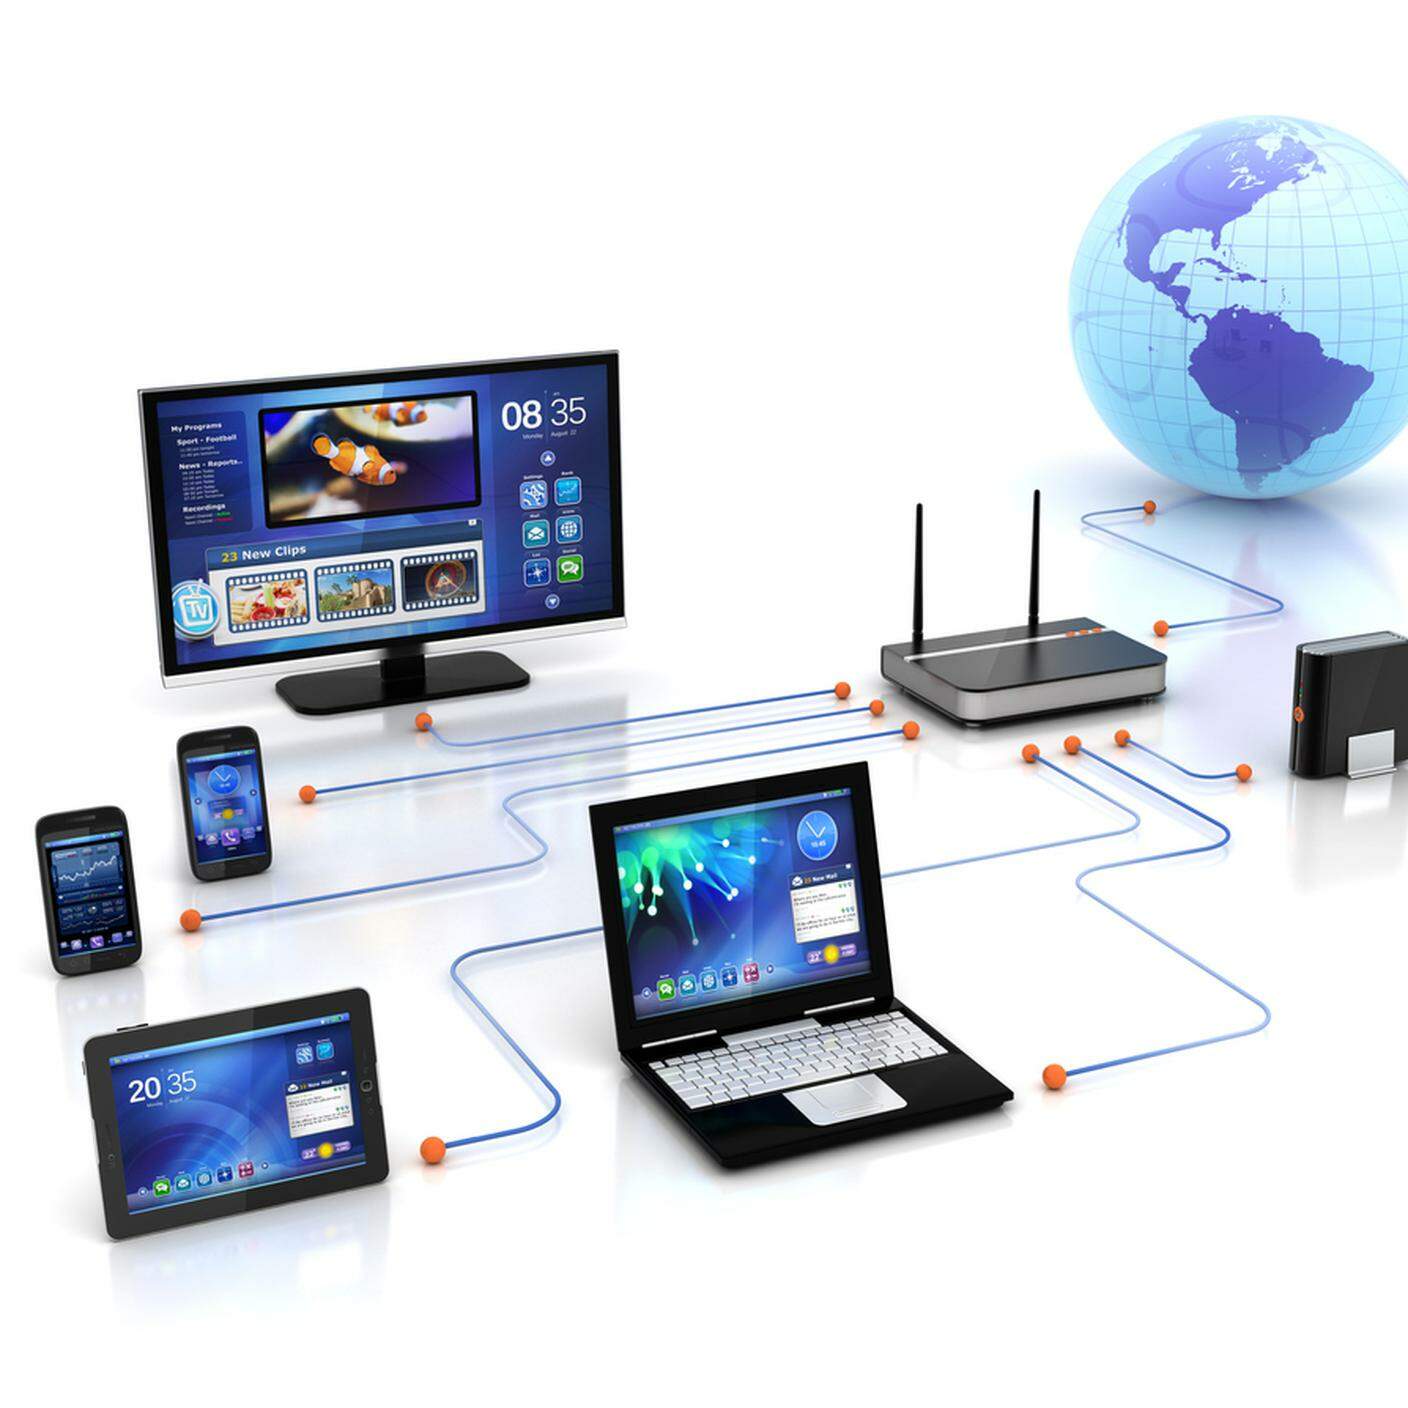 Casa soluzione & dispositivi di rete wifi, Internet, Telefono cellulare, Scaricare dall'internet, Tecnologia, Dati